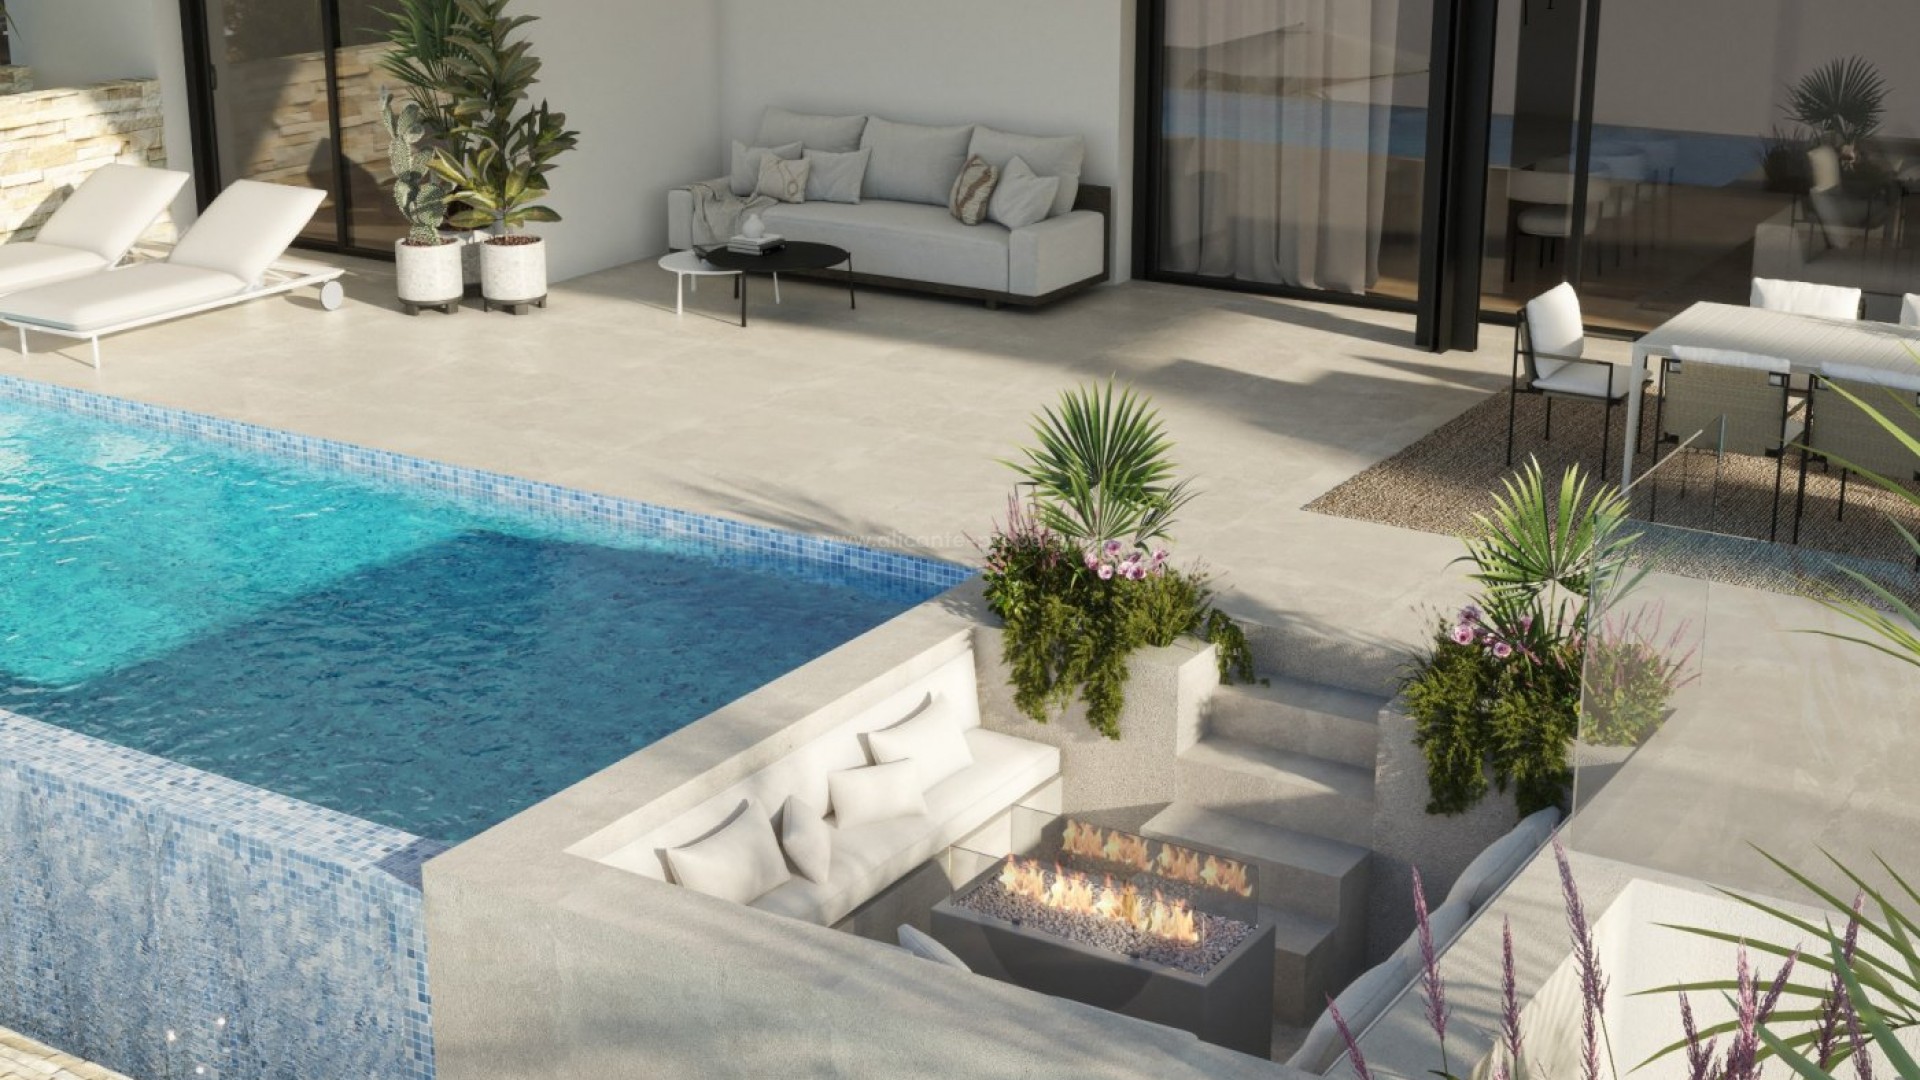 Luksus-leiligheter og toppleiligheter i Las Colinas Golf, Alicante, 3 soverom, 3 bad, svømmebasseng, smarthus, terrasser og solarium